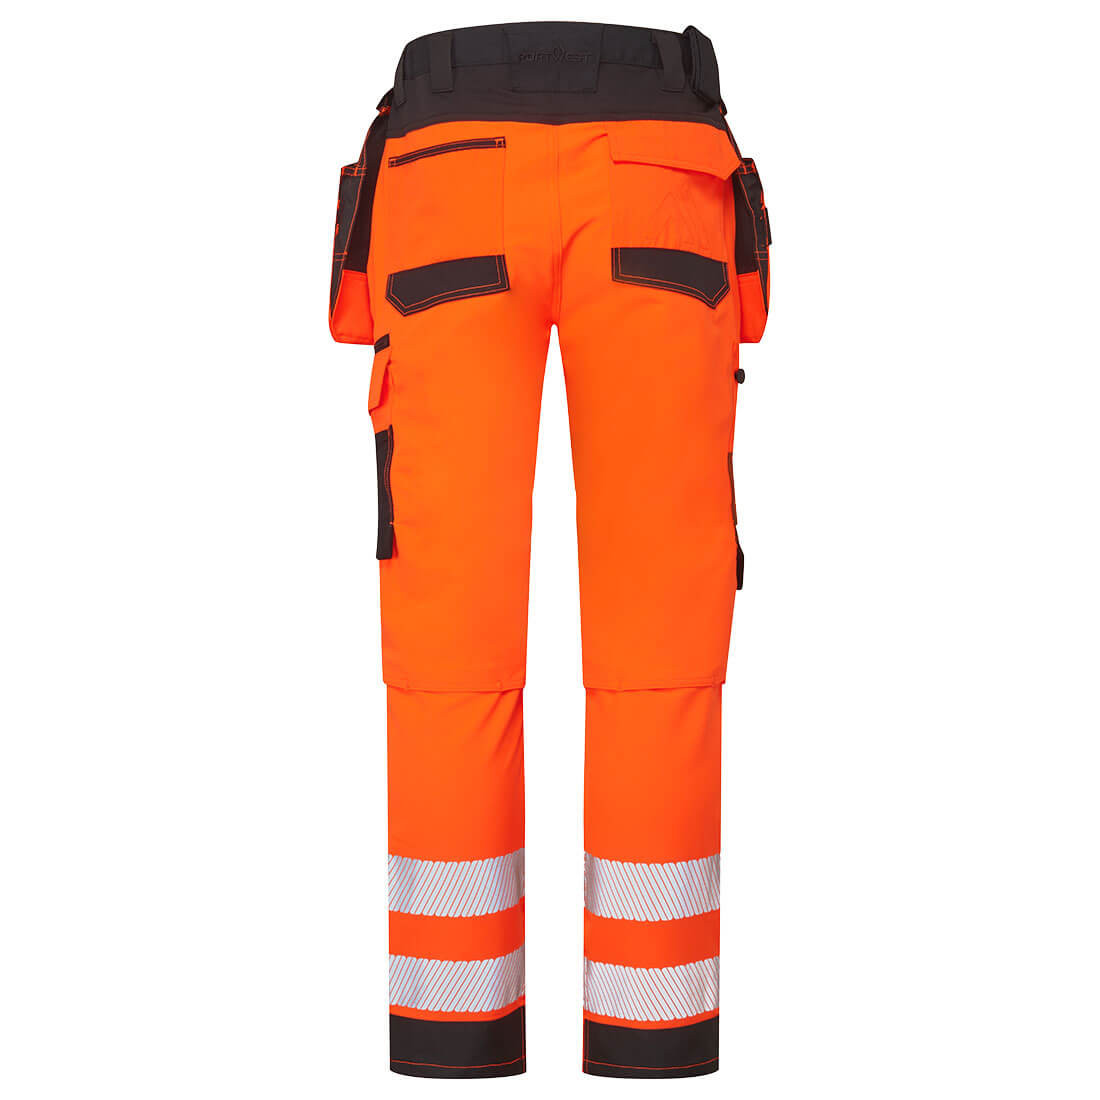 Pantalon Service haute visibilité DX4 - Les vêtements de protection